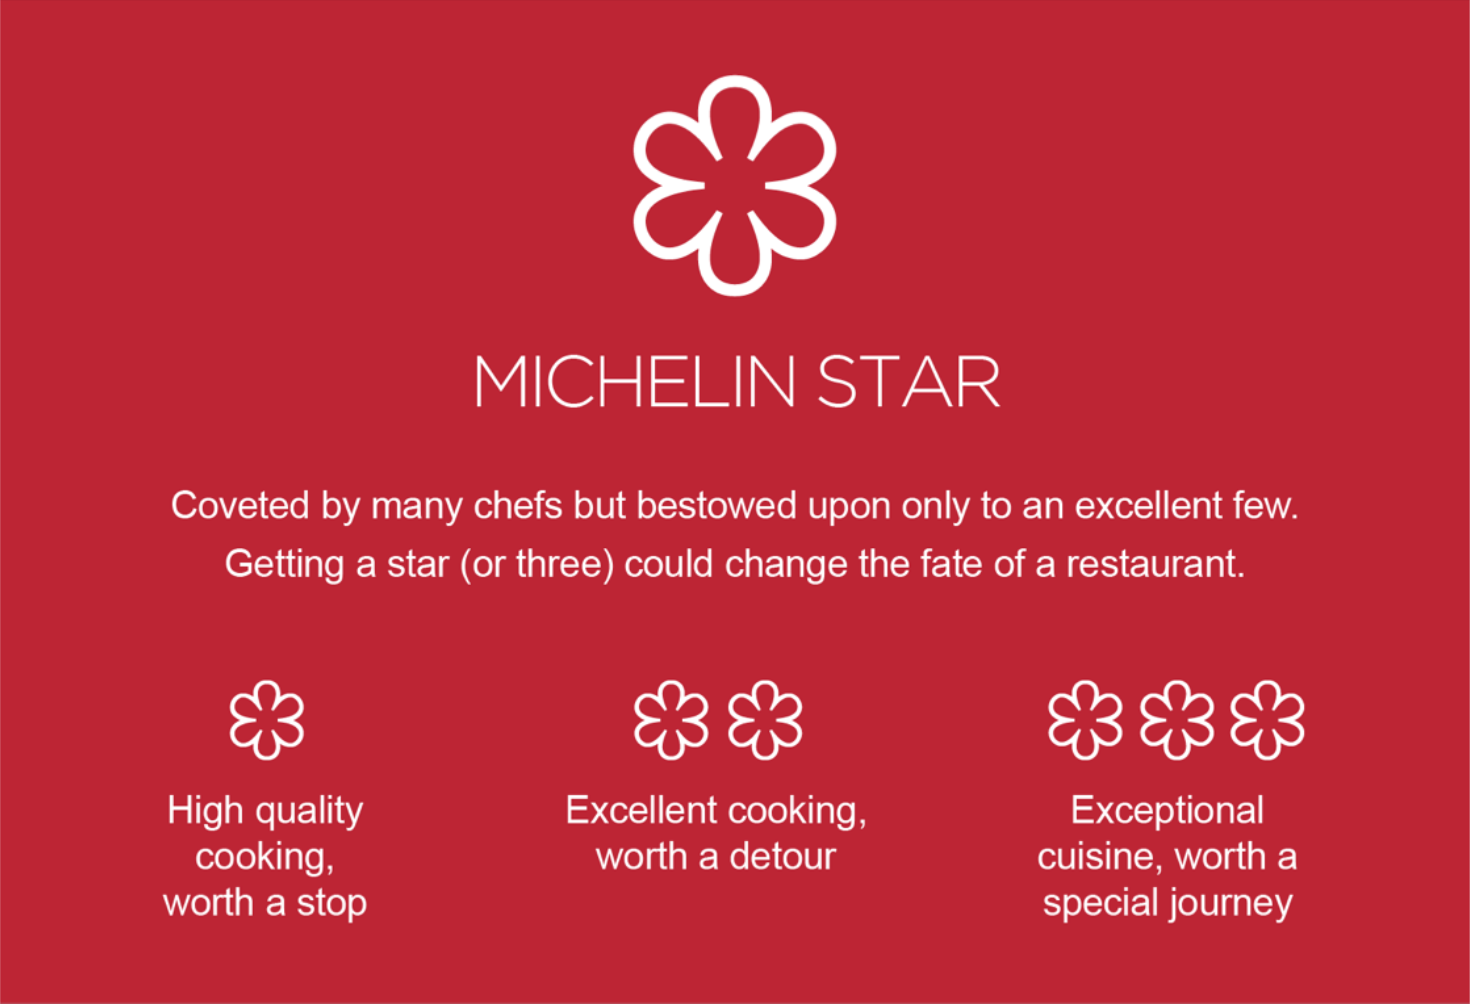 Описание ресторанов, которым присуждают мишленовские звезды, не менялось с 1936 года. Источник: guide.michelin.com